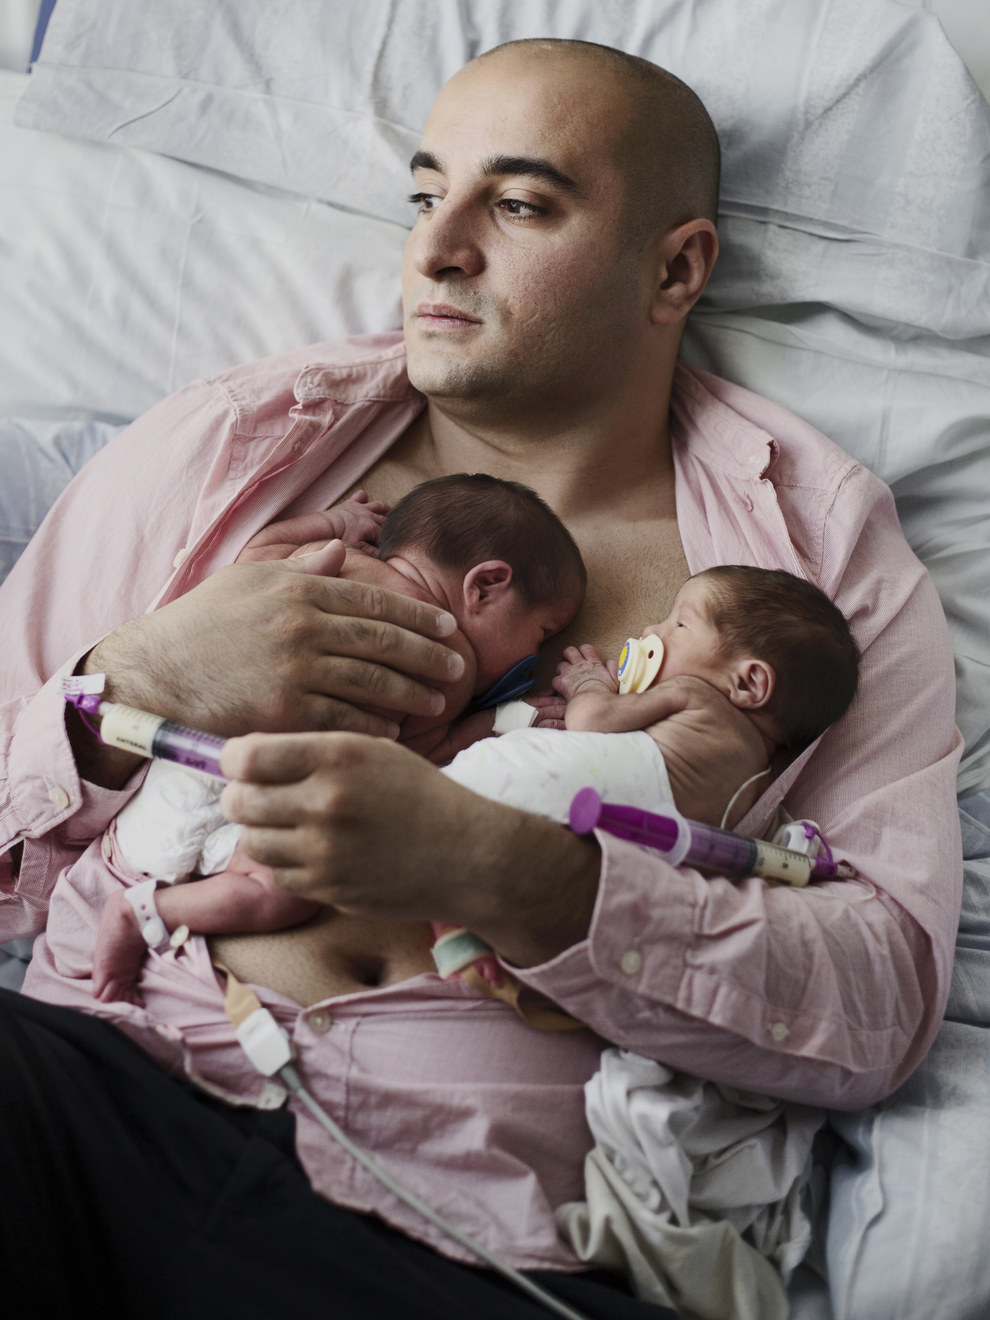 Merawat bayi kembar [image source]